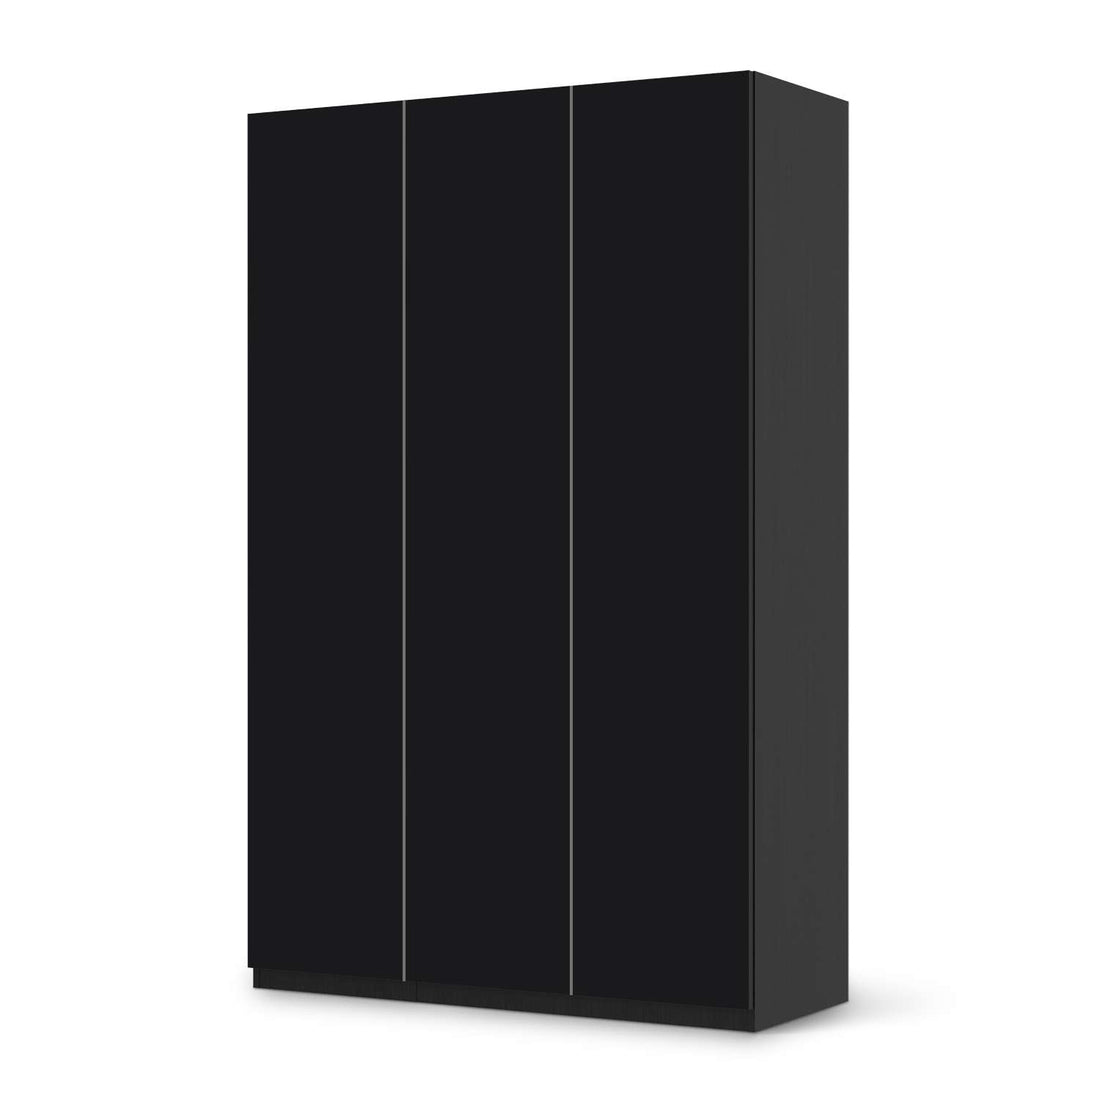 Selbstklebende Folie Schwarz - IKEA Pax Schrank 236 cm Höhe - 3 Türen - schwarz